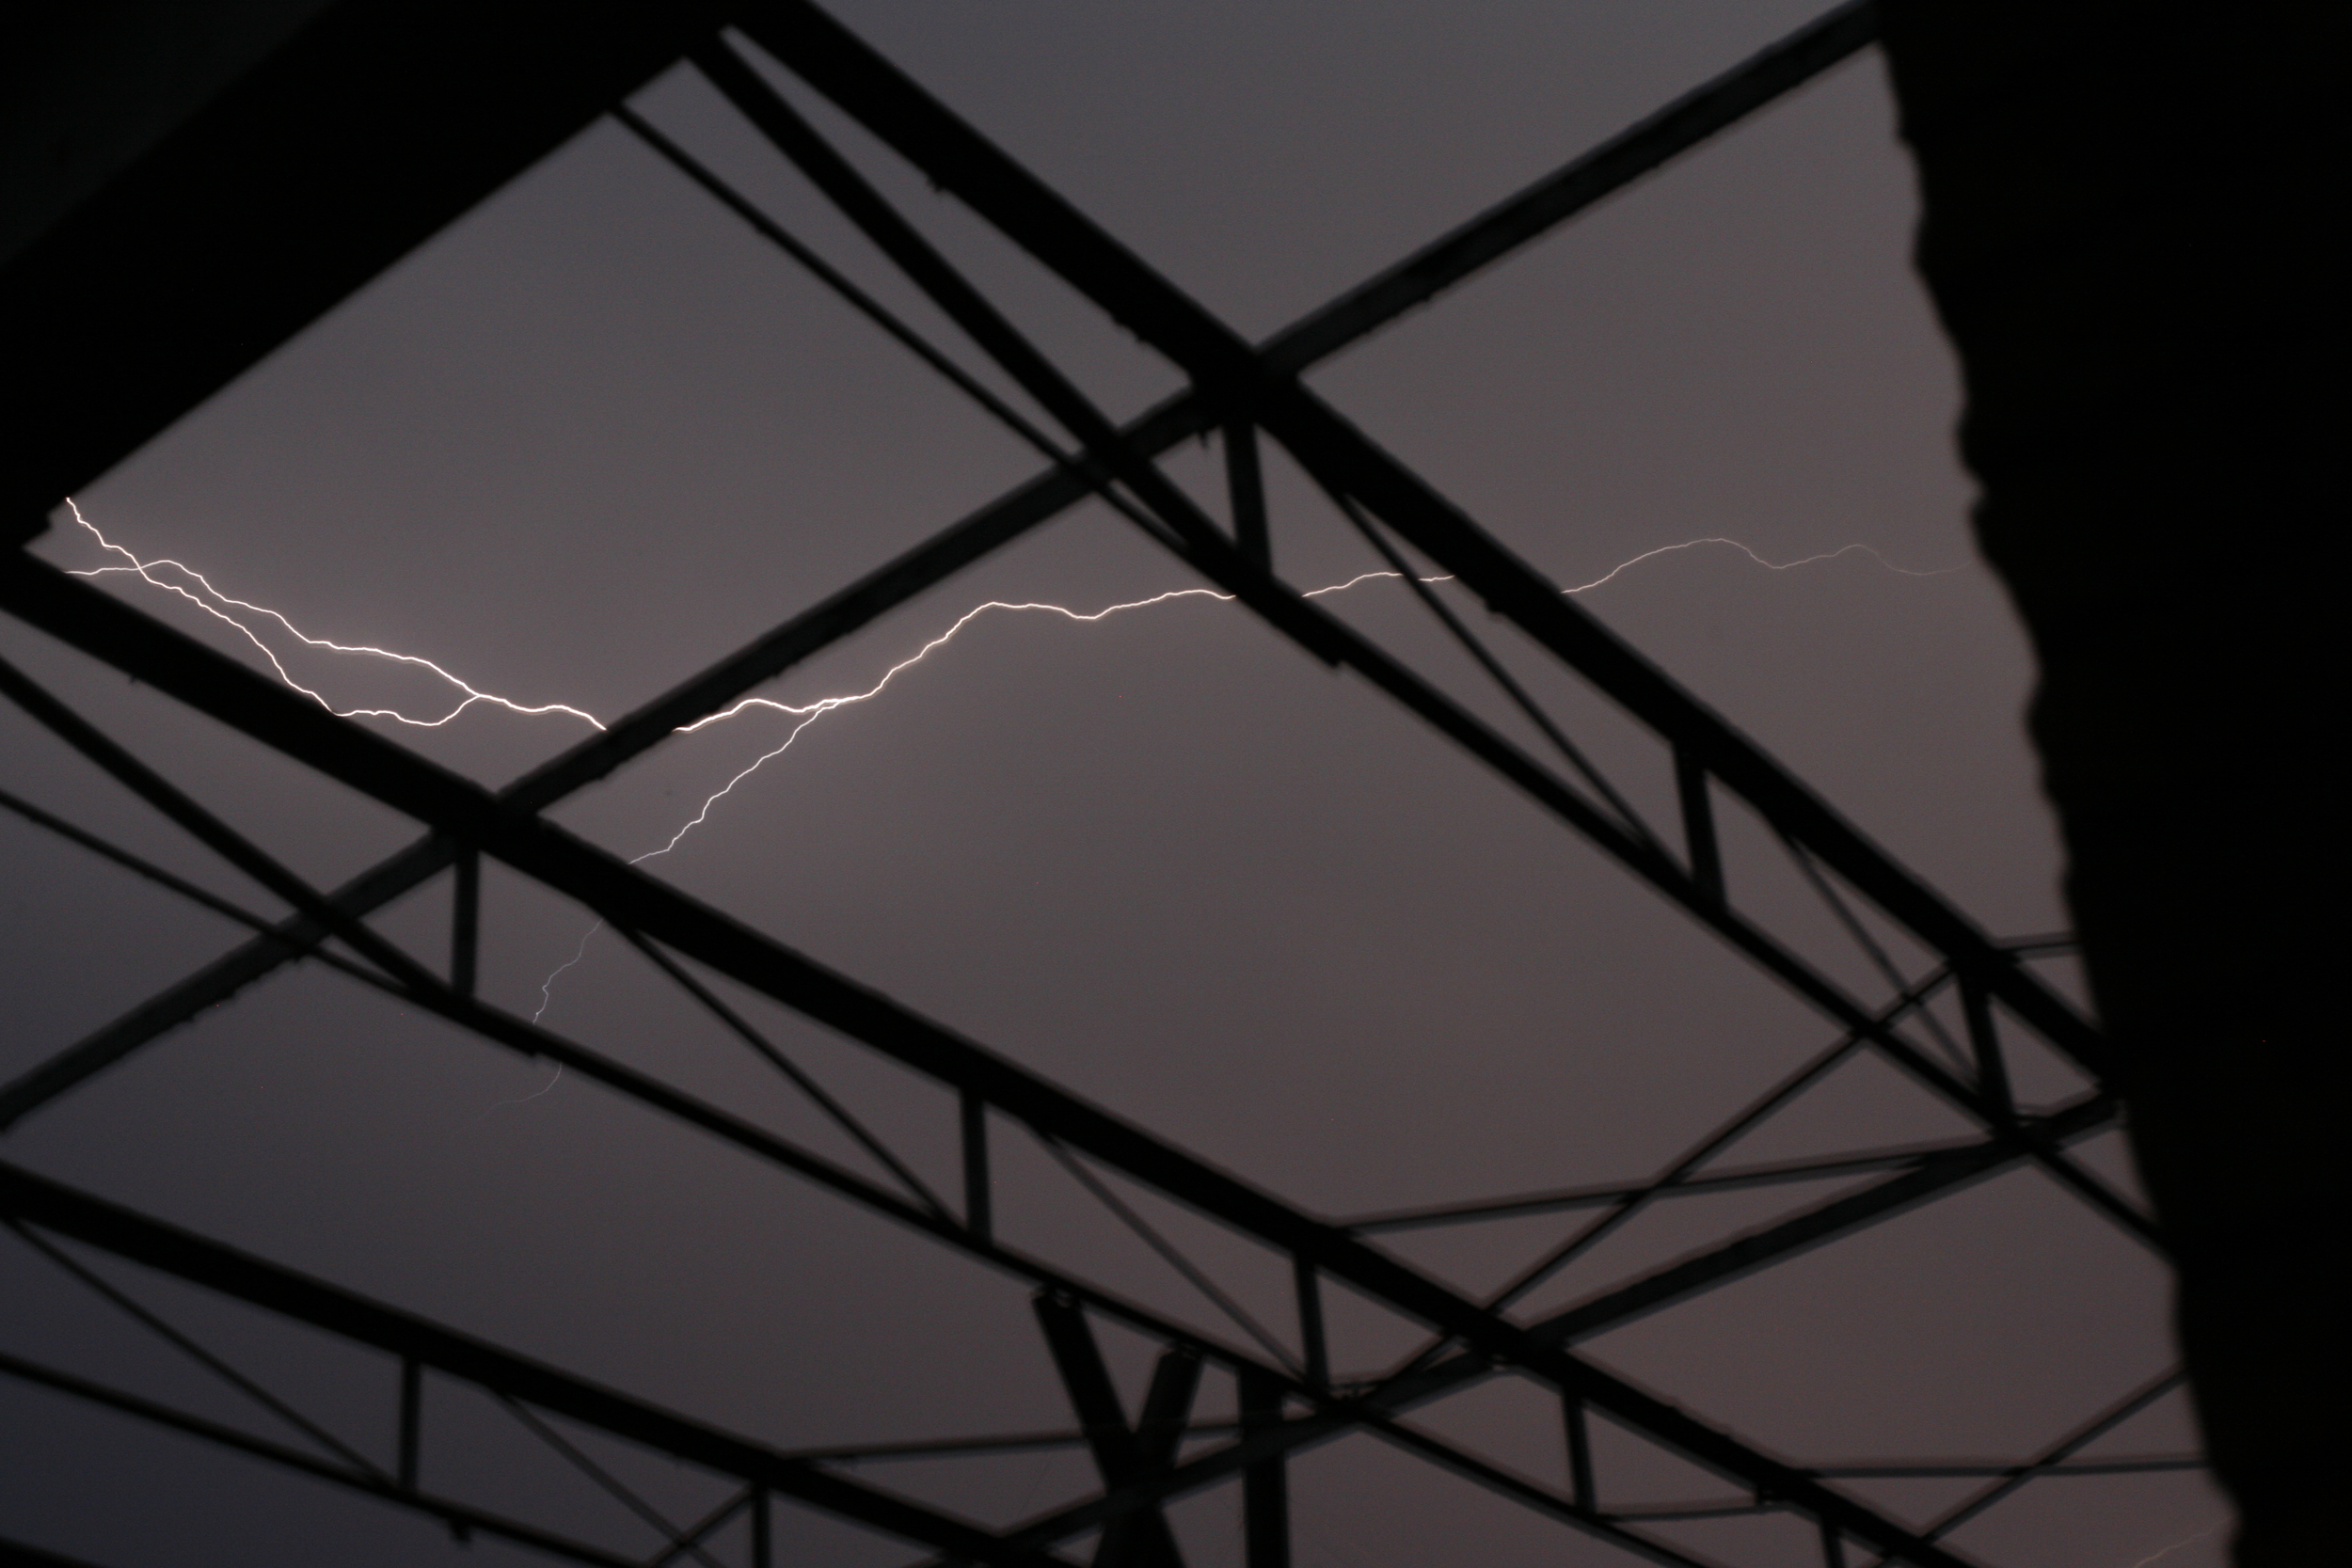 A lightning bolt striking at night